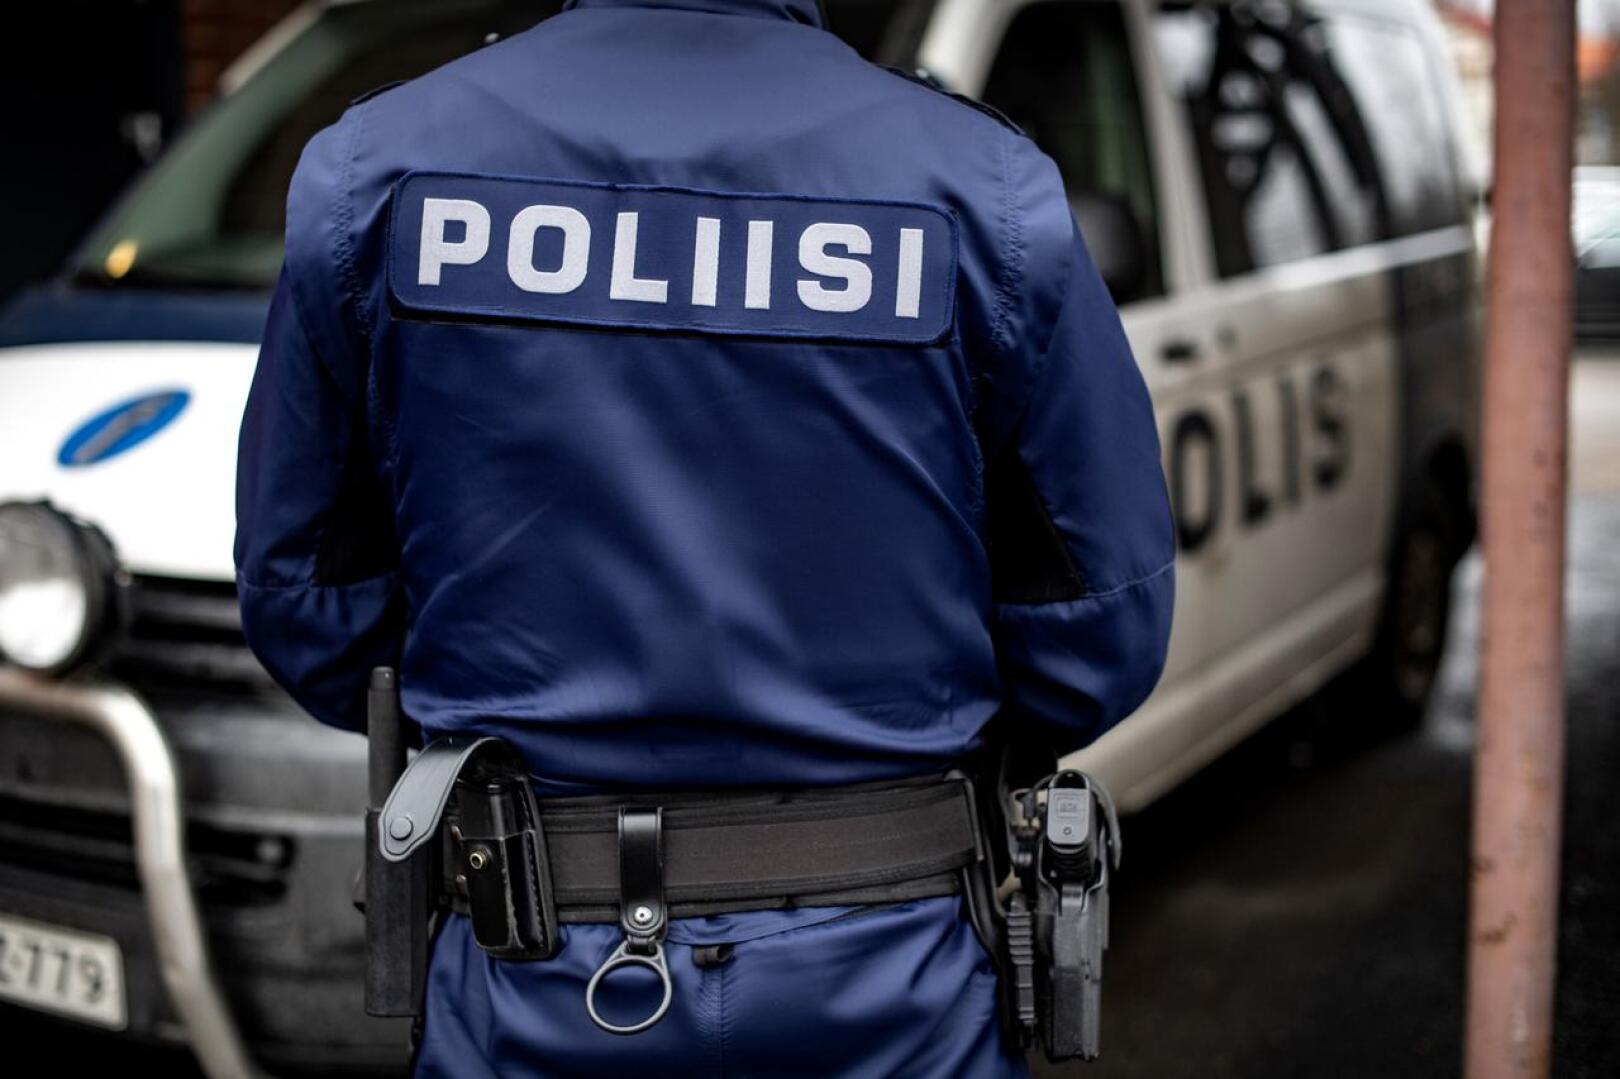 Viikonloppuna kirjattiin monta väkivaltarikosta Pohjanmaan poliisin toimialueella.